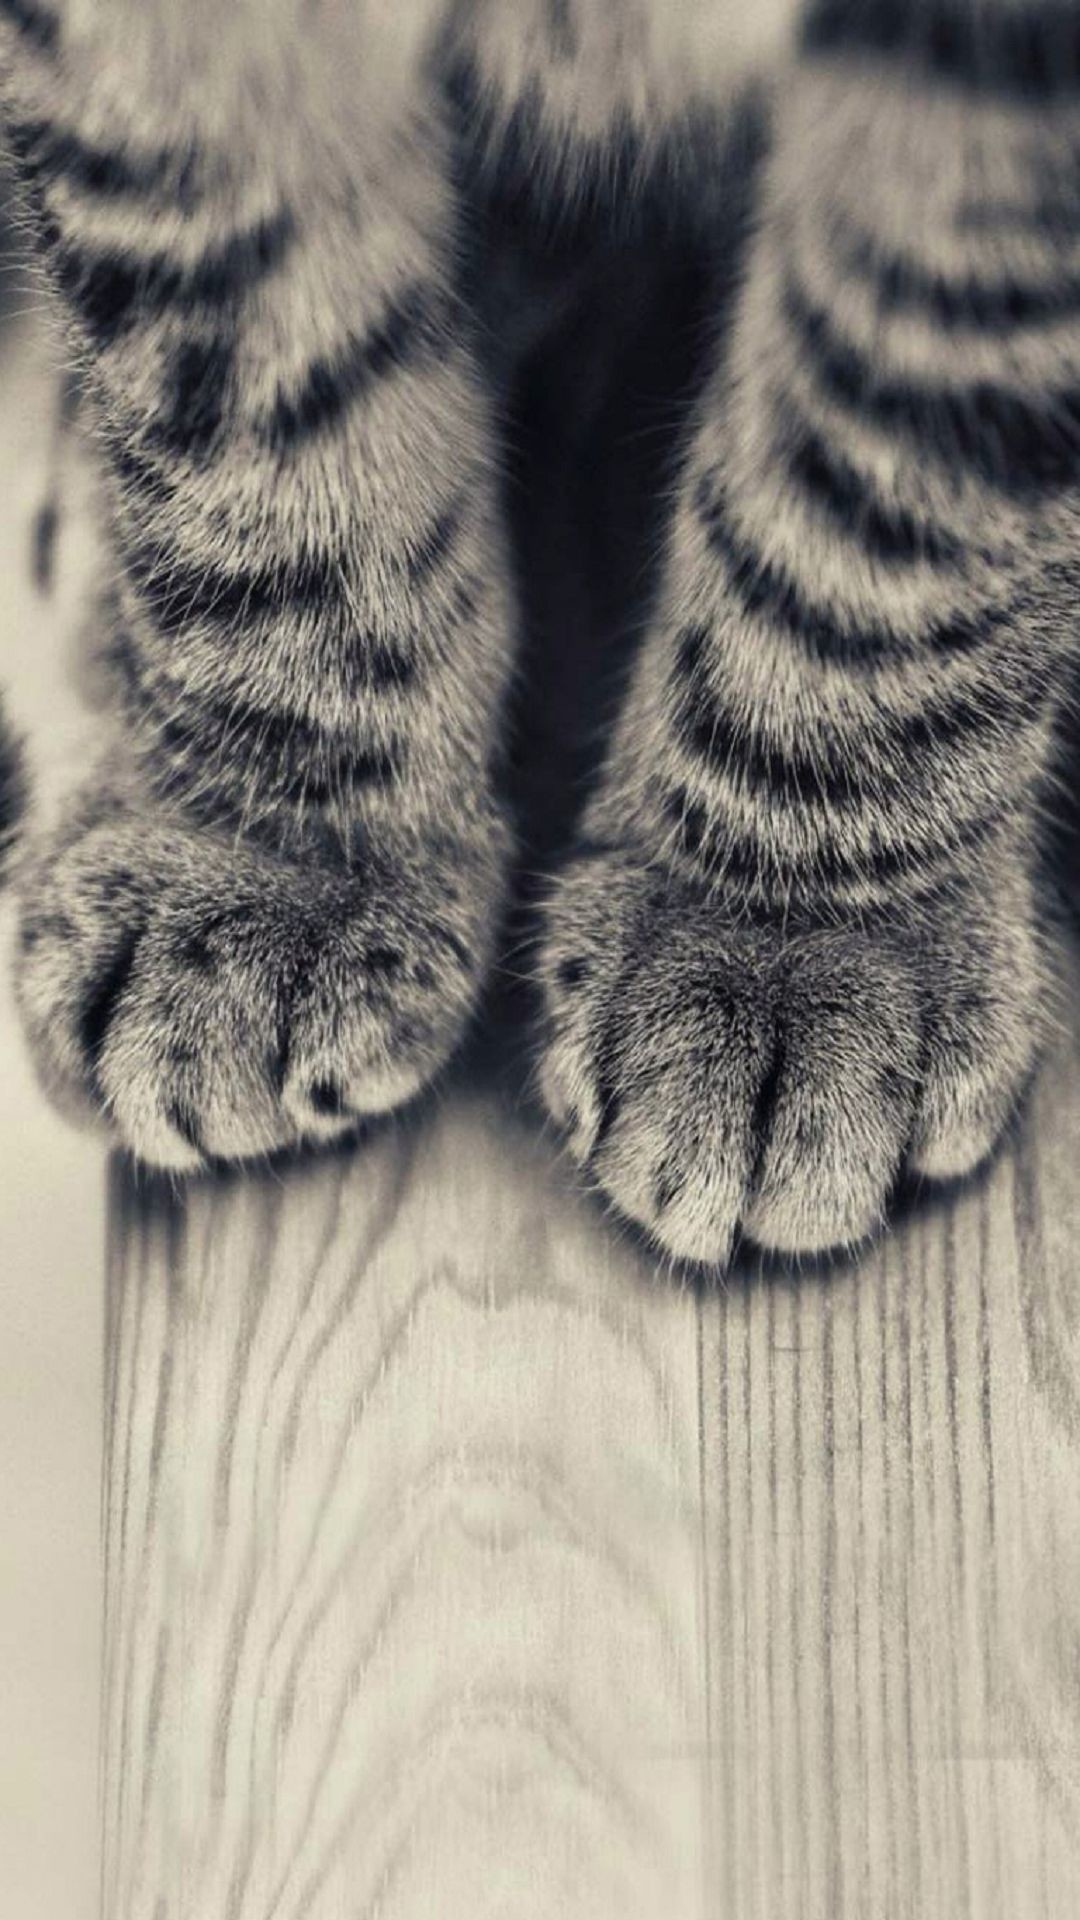 条纹小猫腿和木地板